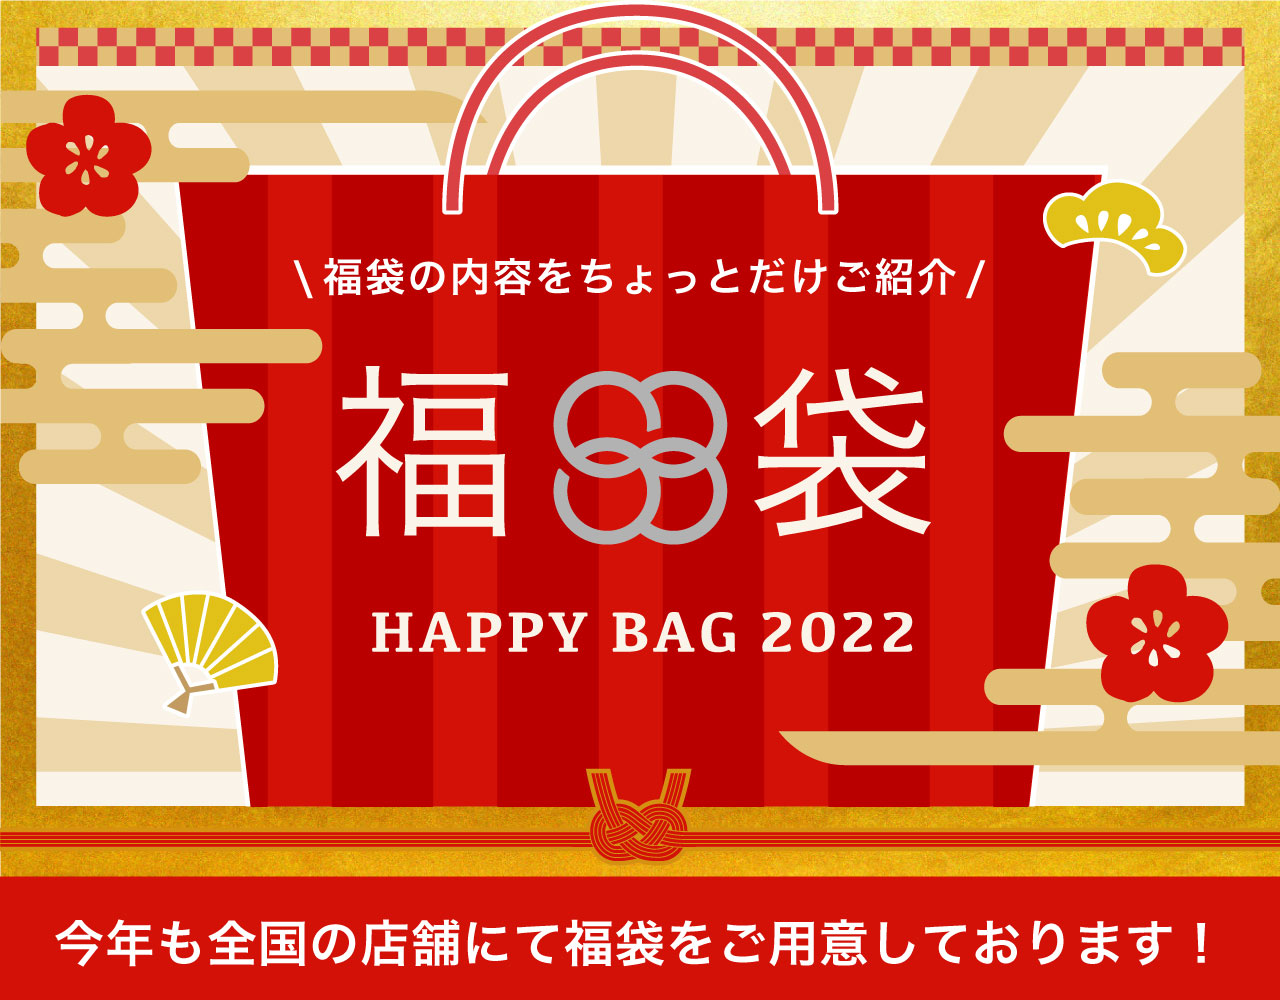 HAPPY BAG 2022 各種ブランド福袋のご紹介♪